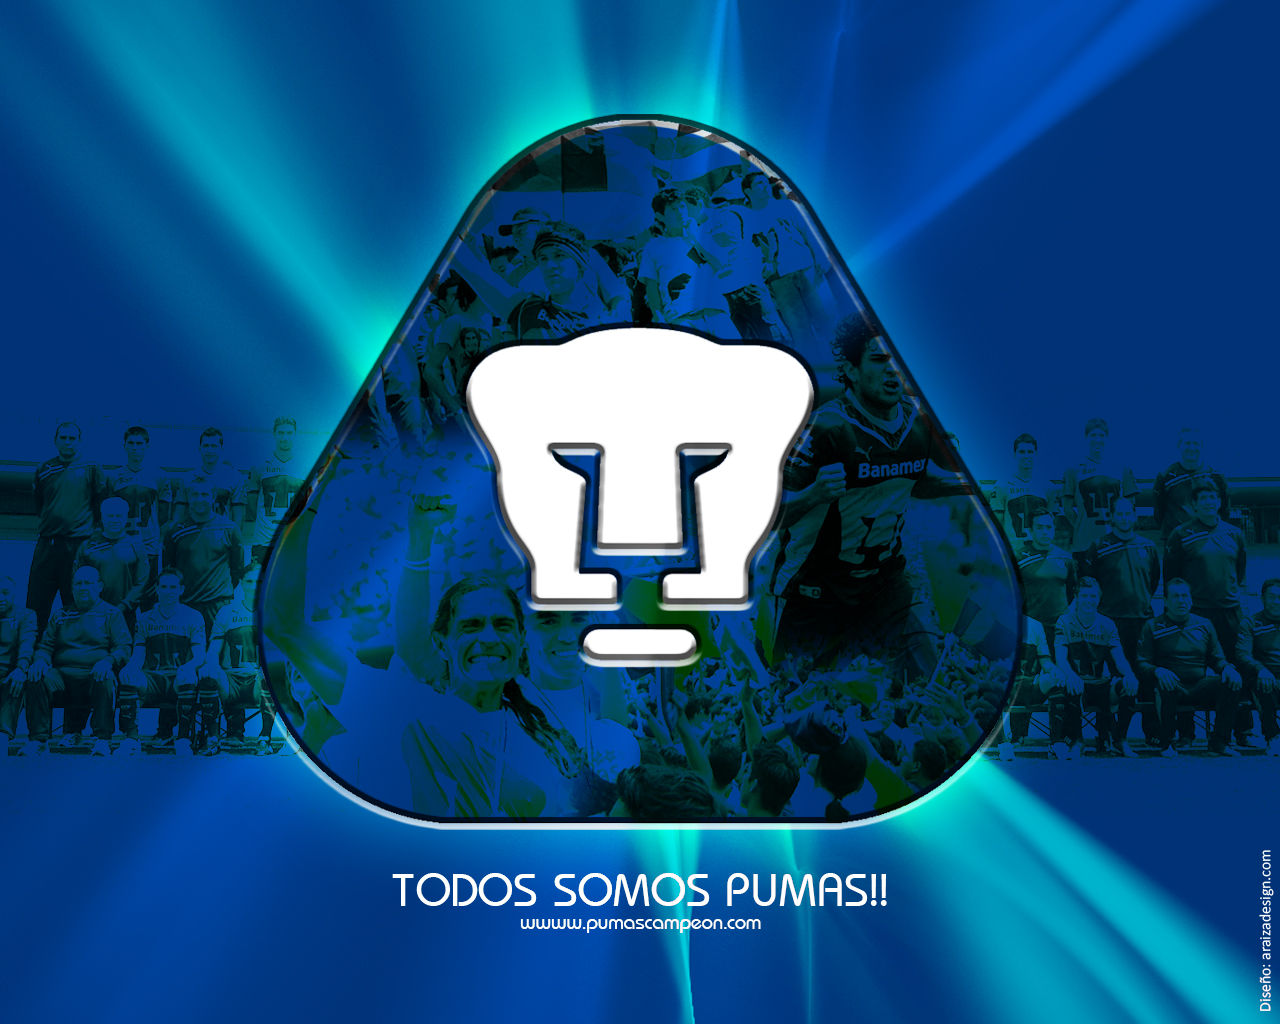 Nuevo Blog de Pumas - Buscamos colaboradores - La Cancha de Pumas UNAM